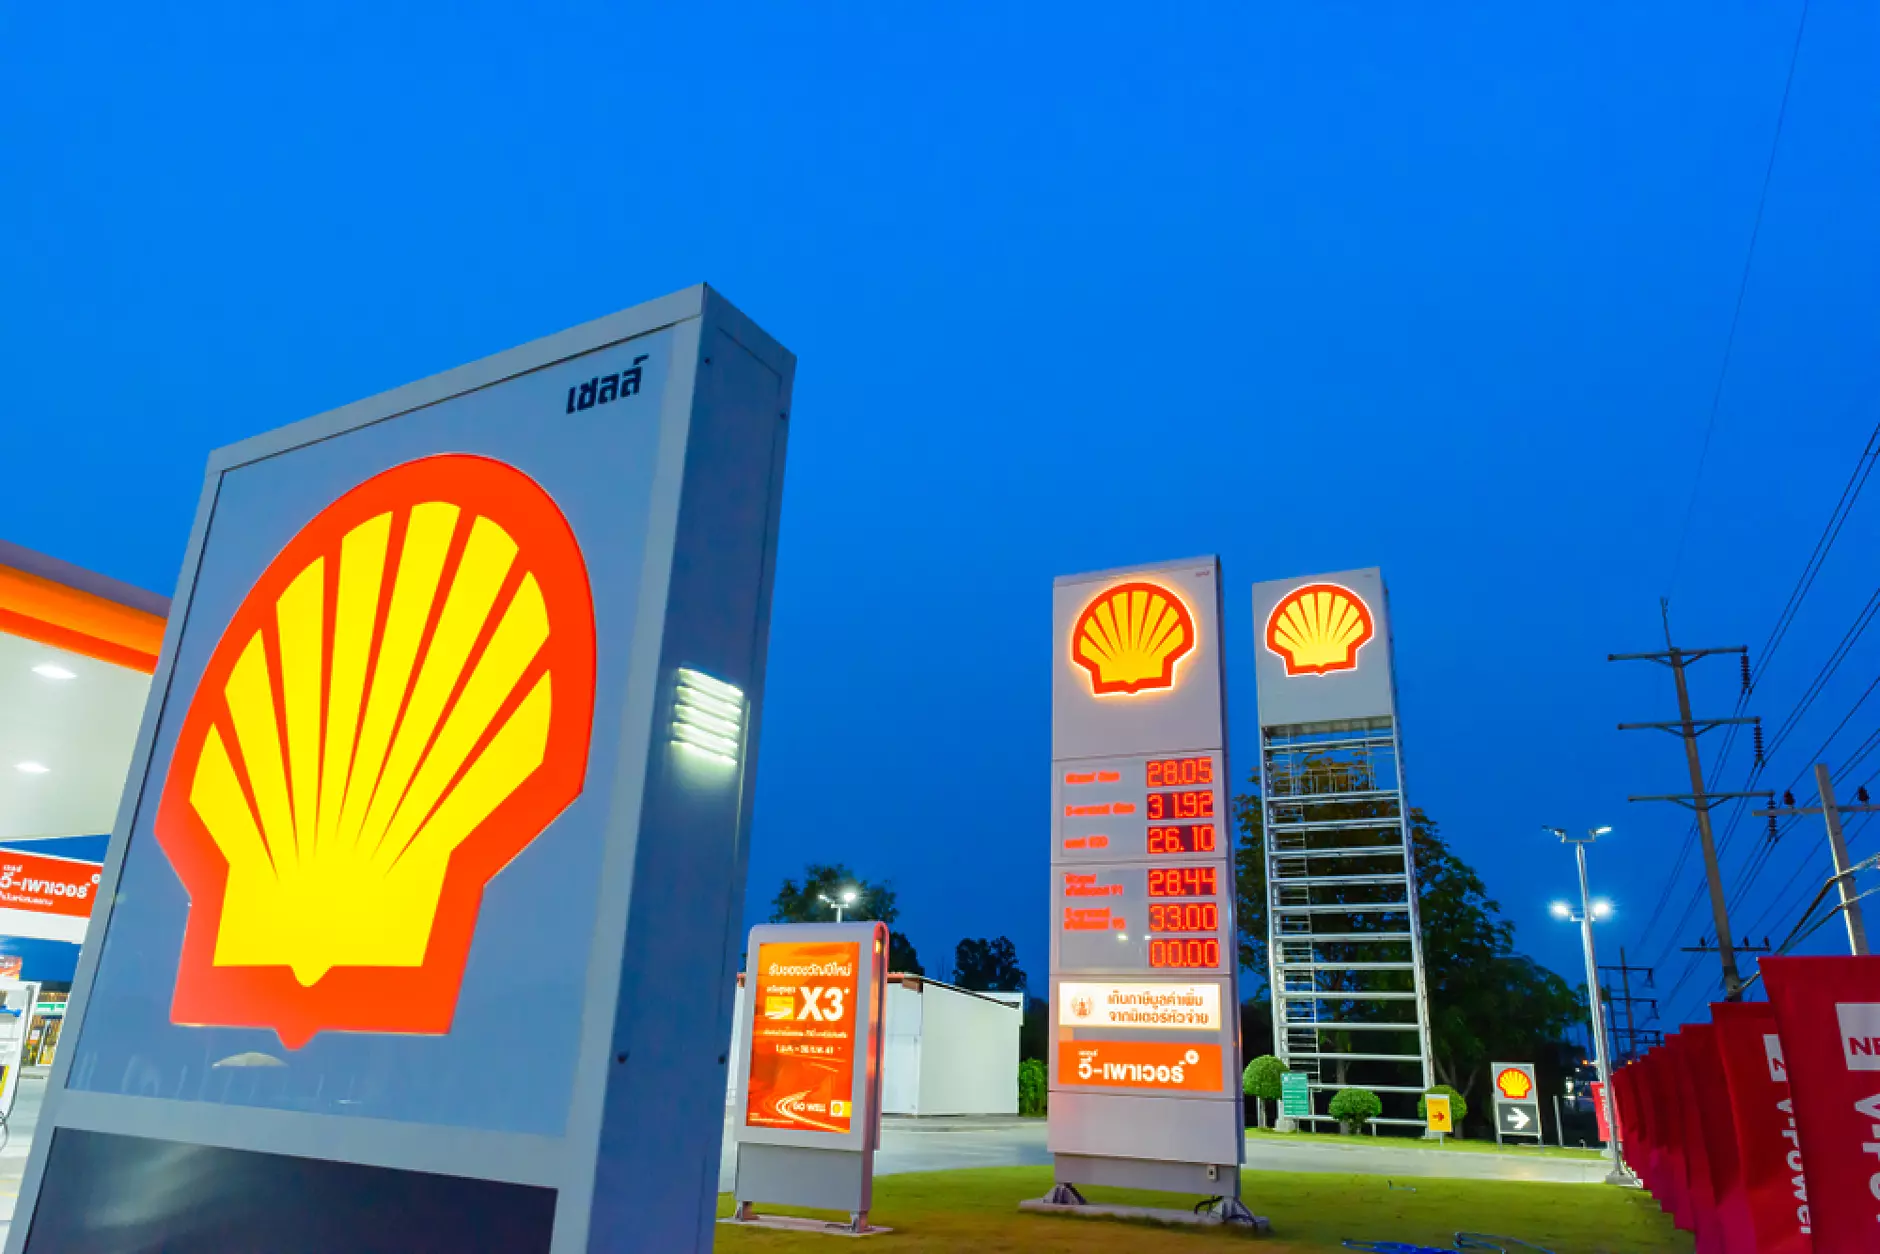 Shell обмисля оттегляне от бизнеса  с  доставки на ток във Великобритания, Германия и Холандия